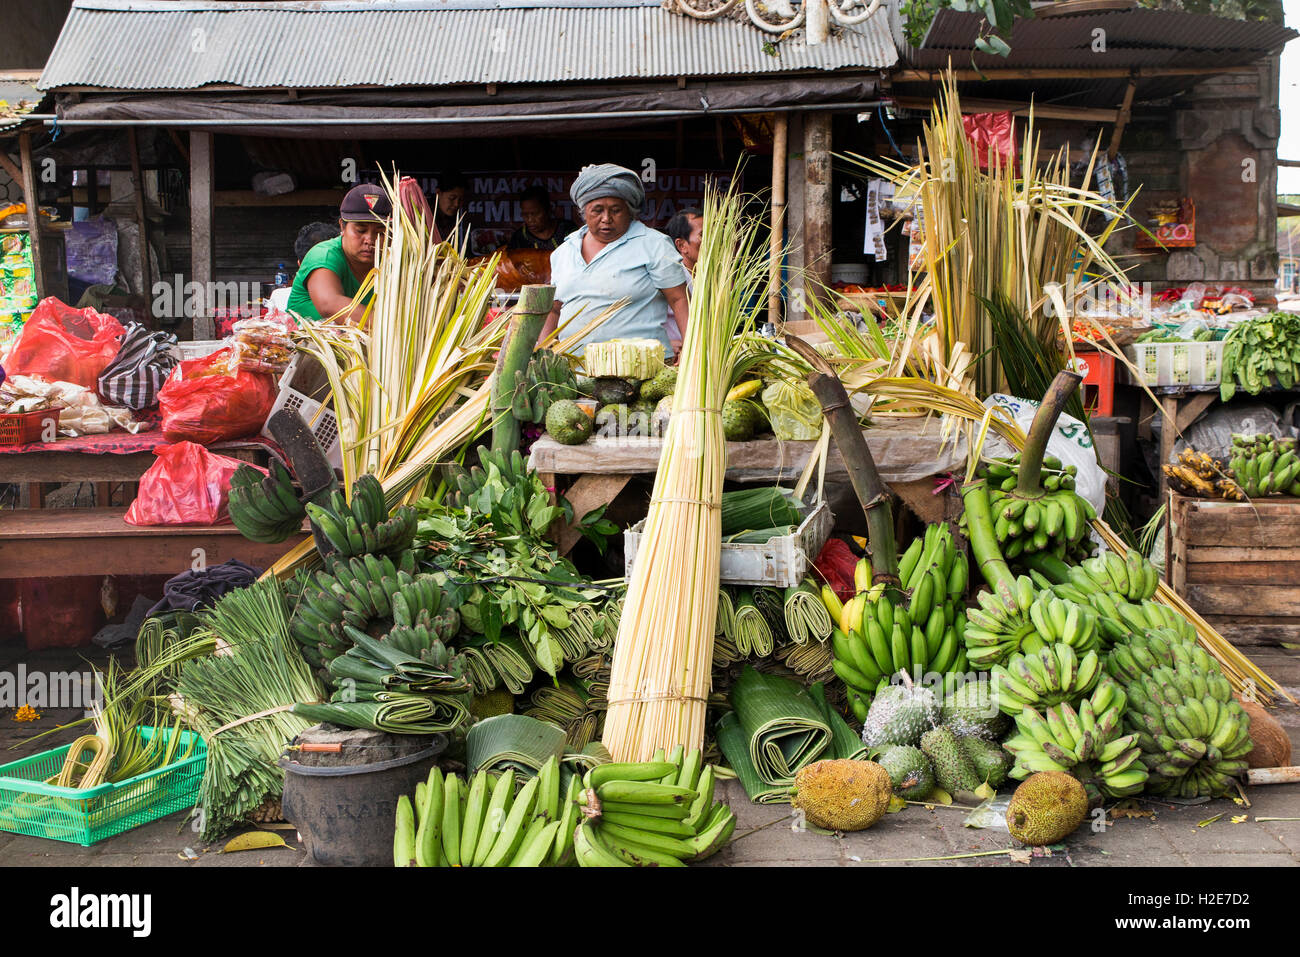 Indonesien, Bali, Payangan, Pasar, Day-Markt, am Straßenrand Obst und Gemüse stand im Ansatz Kuningan Festival Stockfoto